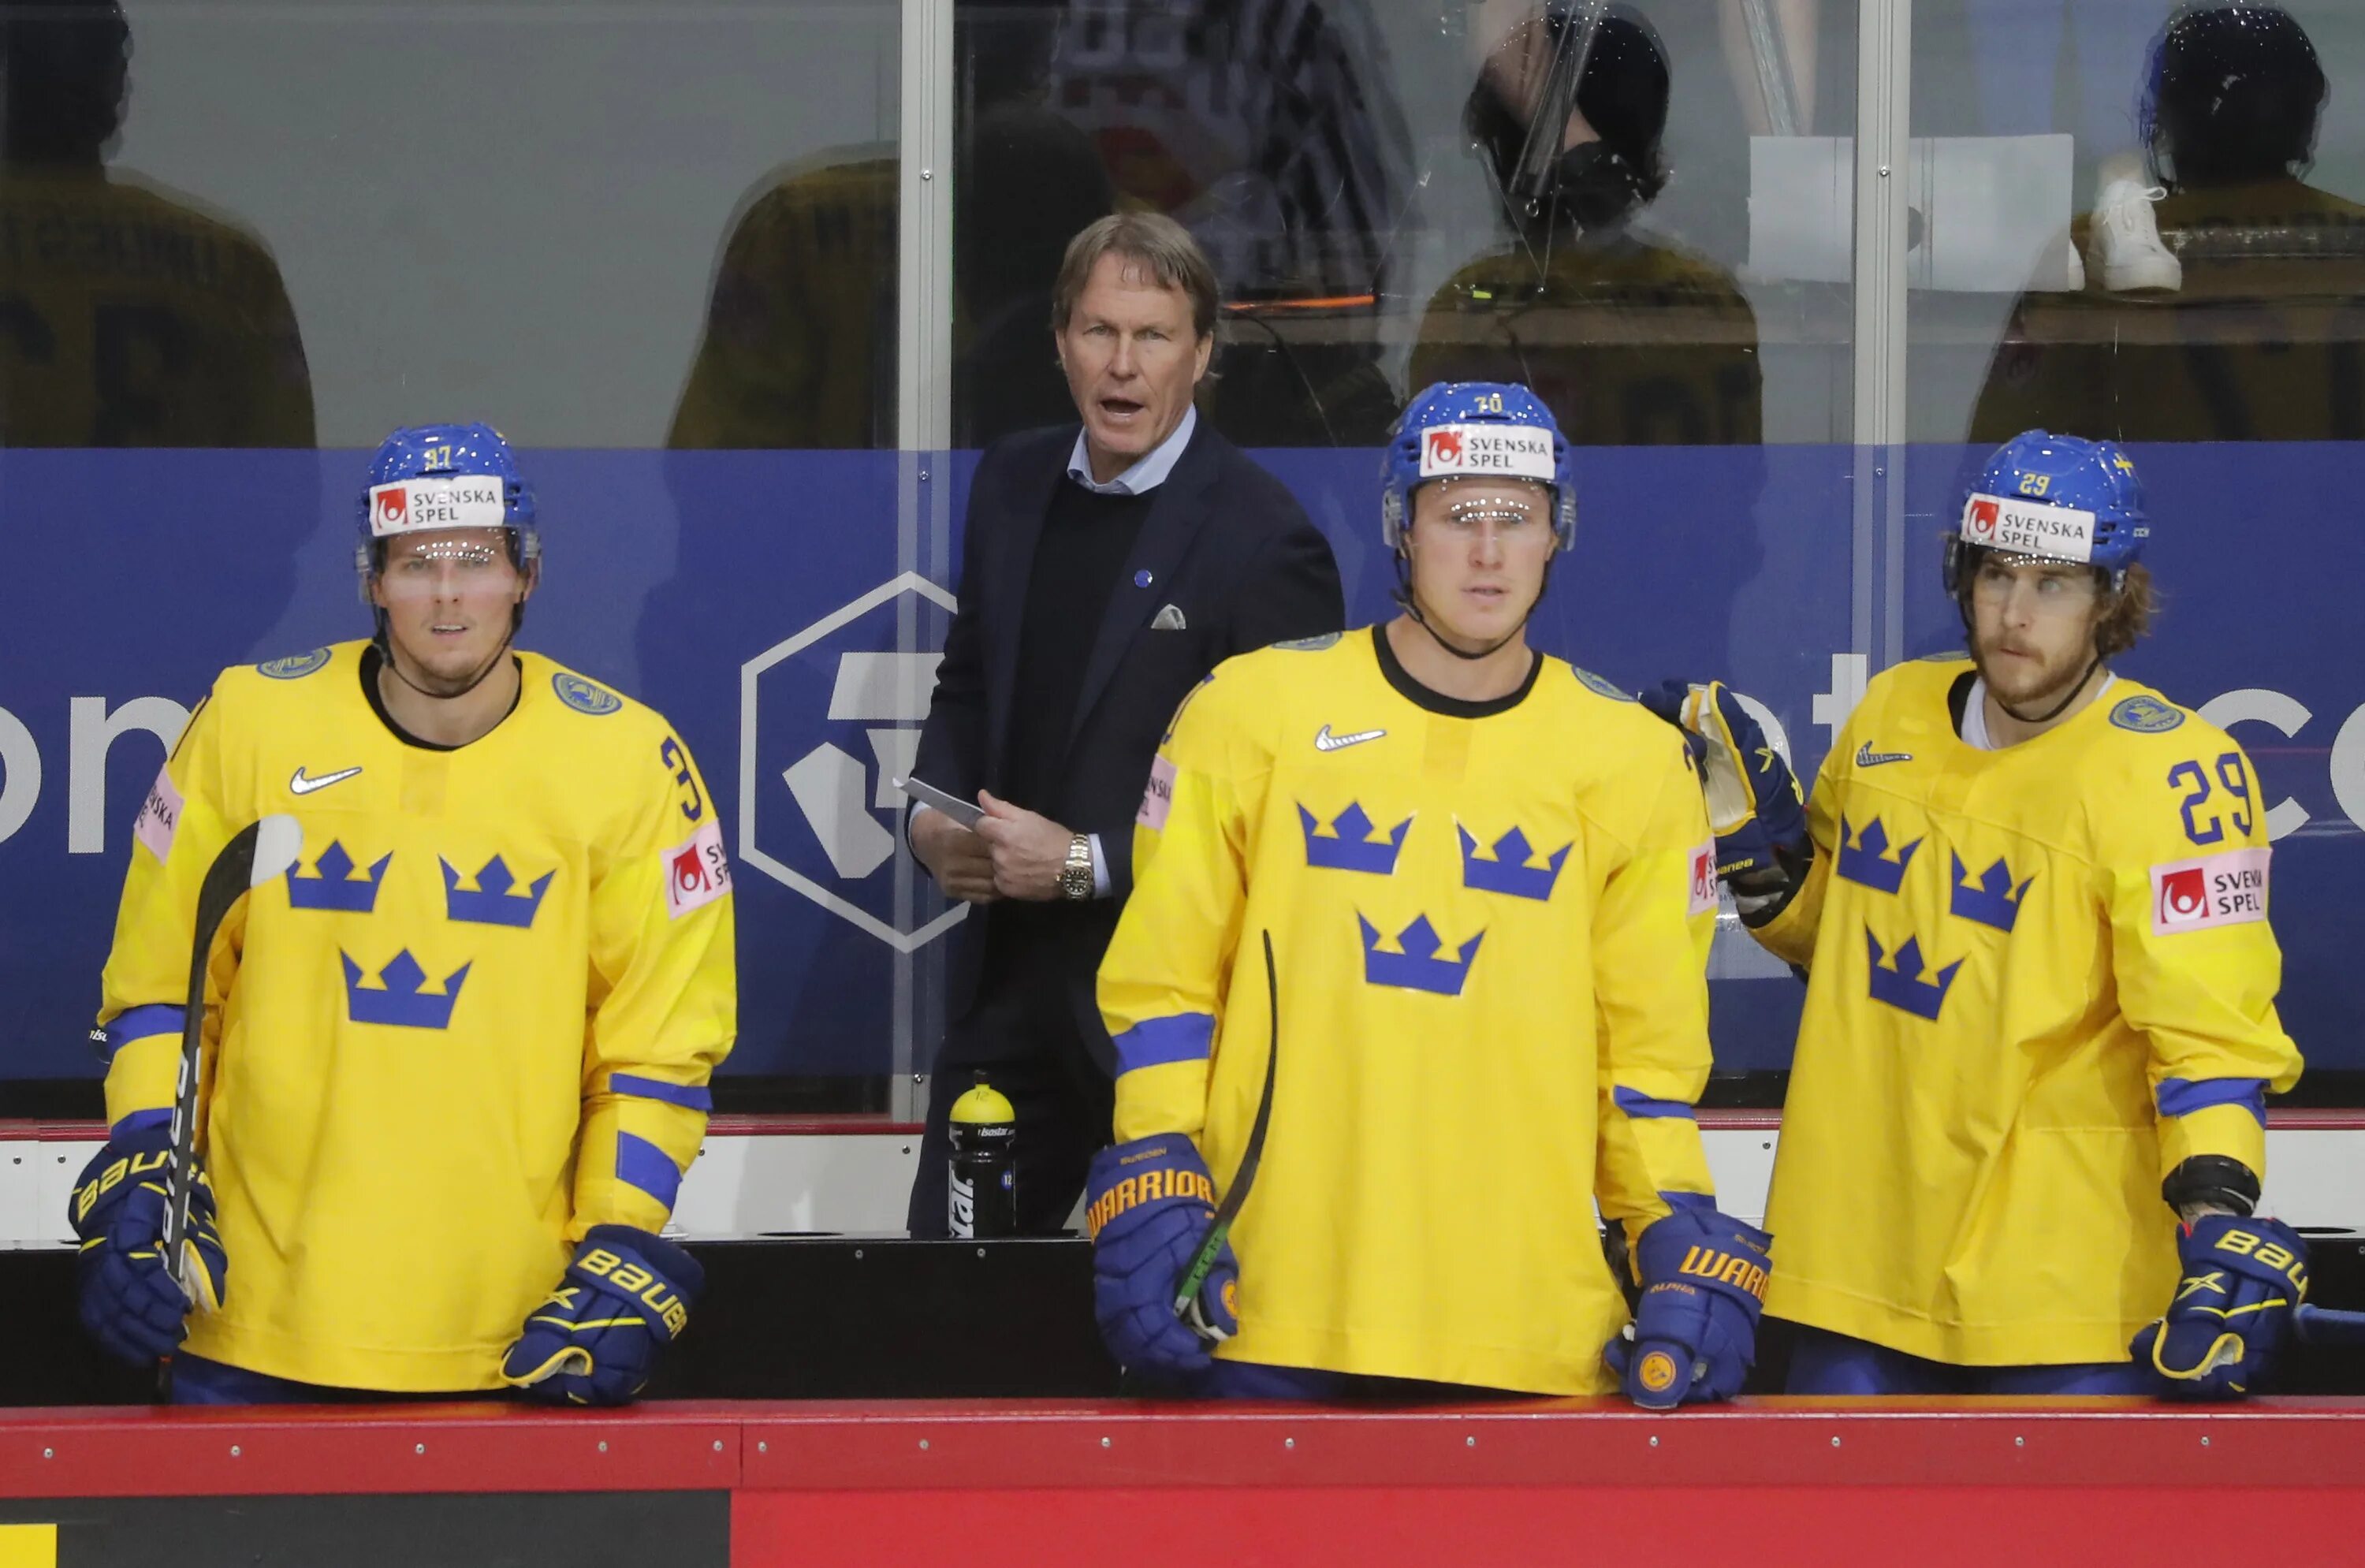 Сколько побед одержала сборная швеции. Сборная Швеции хоккей. Форма сборной Швеции по хоккею 2021. Форма сборной Швеции по хоккею. Тренеры сборной Швеции по хоккею с шайбой.